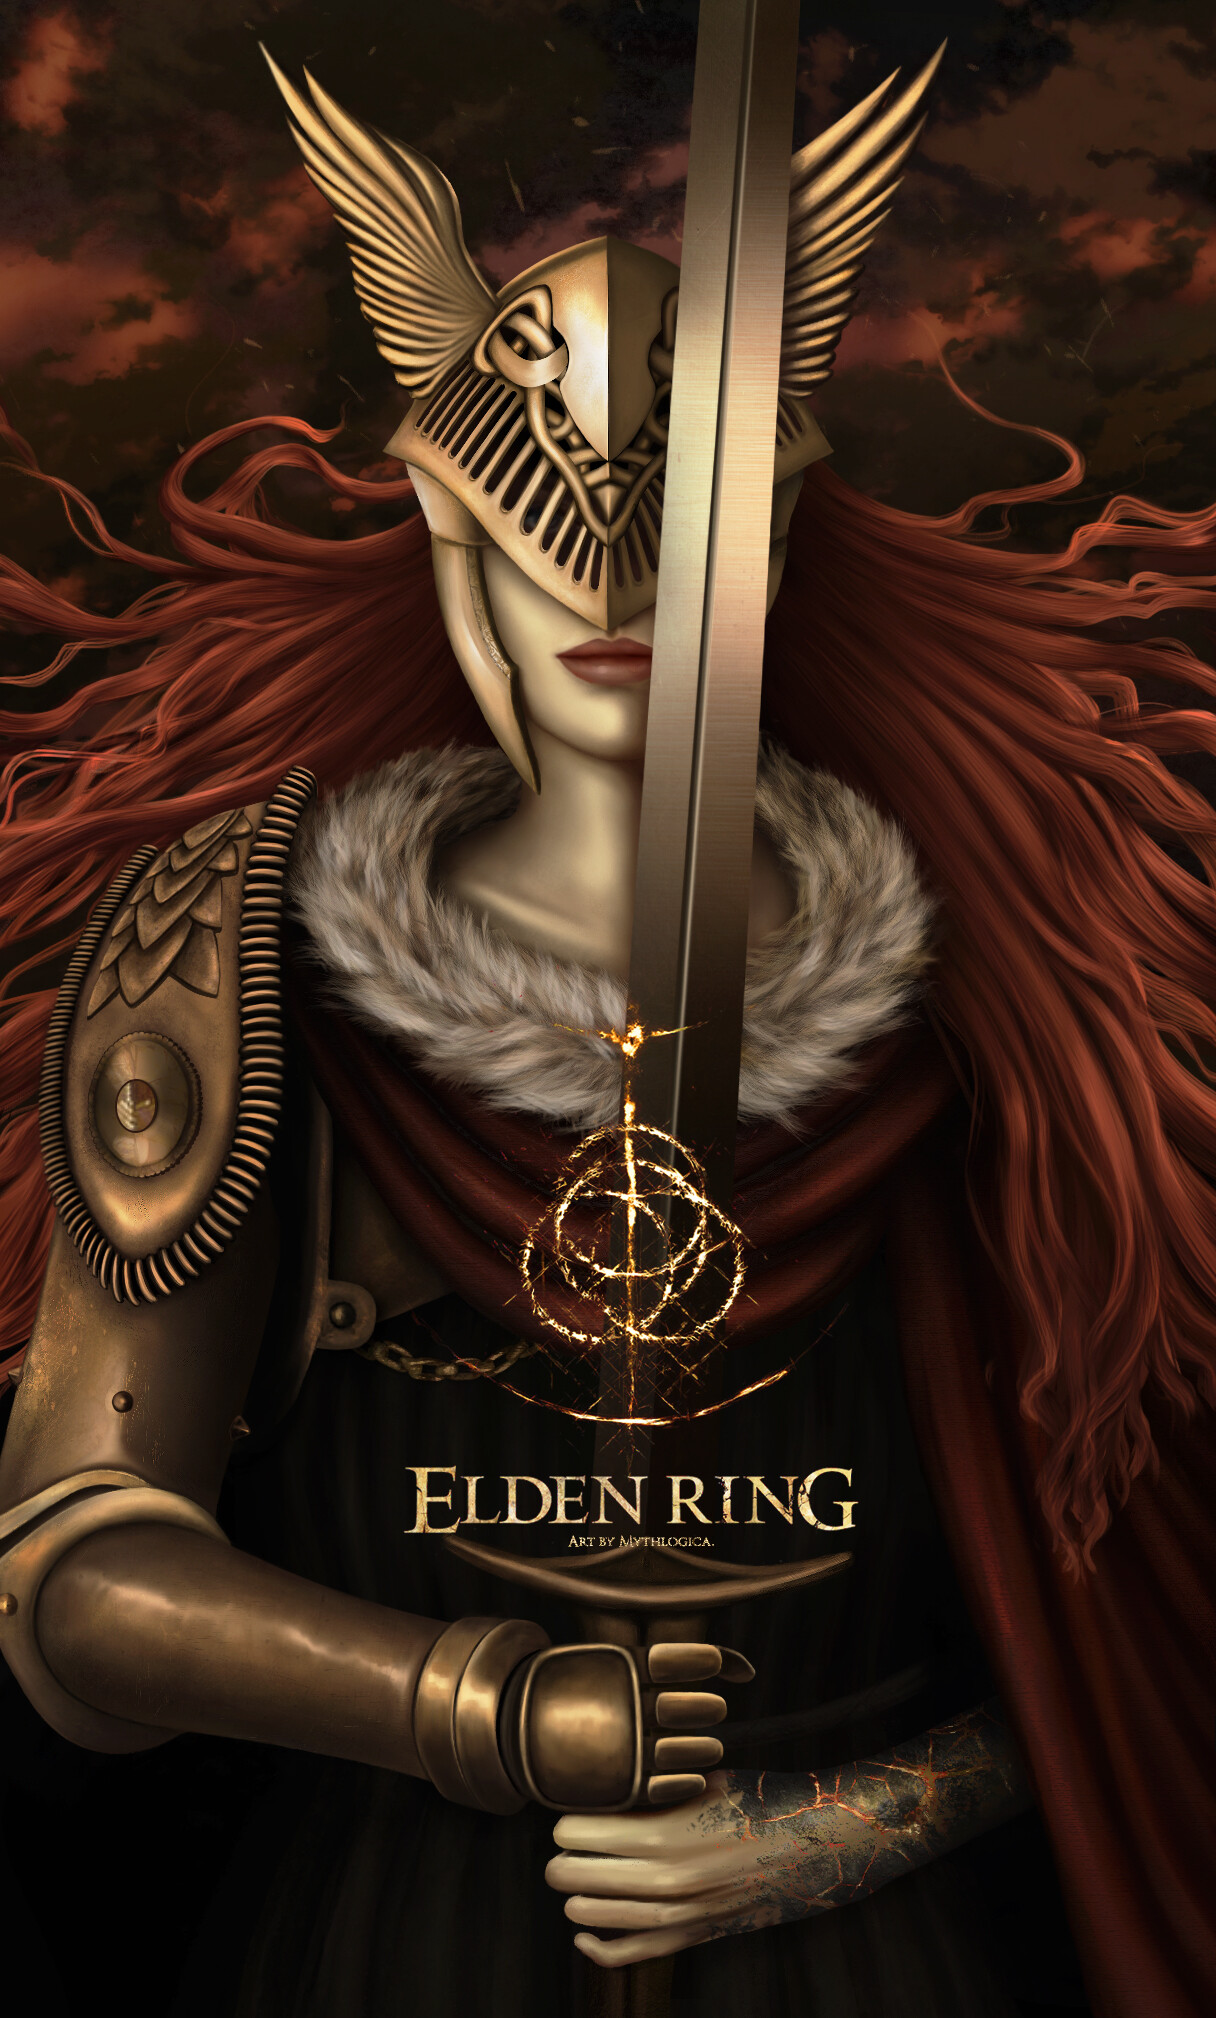 ArtStation - Malenia, Blade of Miquella - Elden Ring fanart